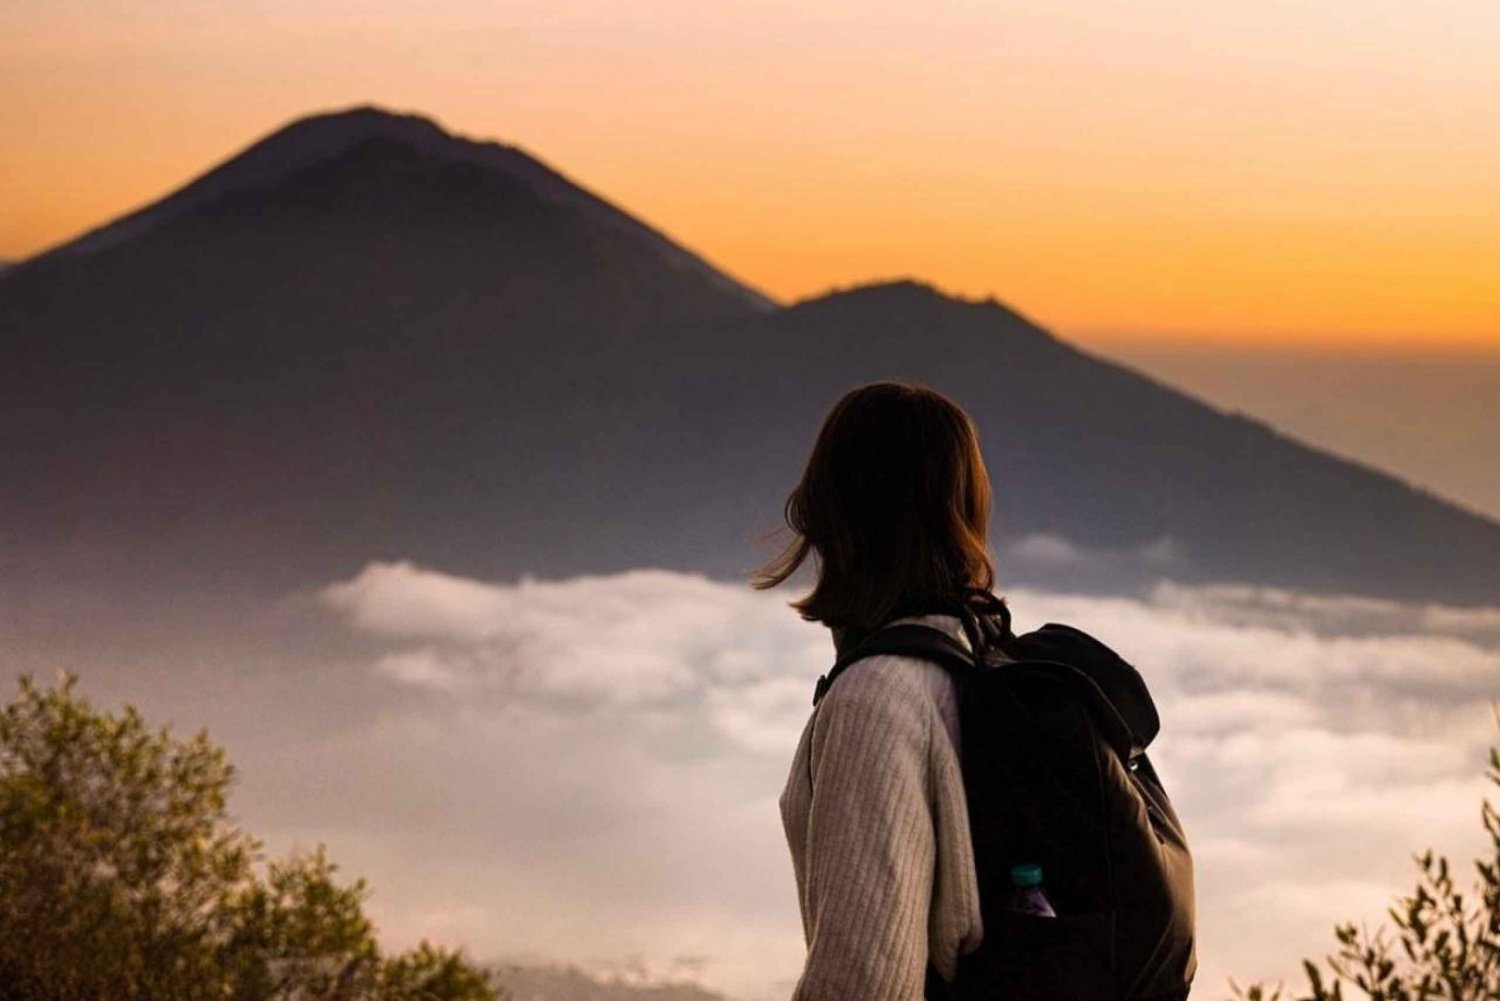 Ubud : Mount Batur Trekking with Breakfast & Hot Spring